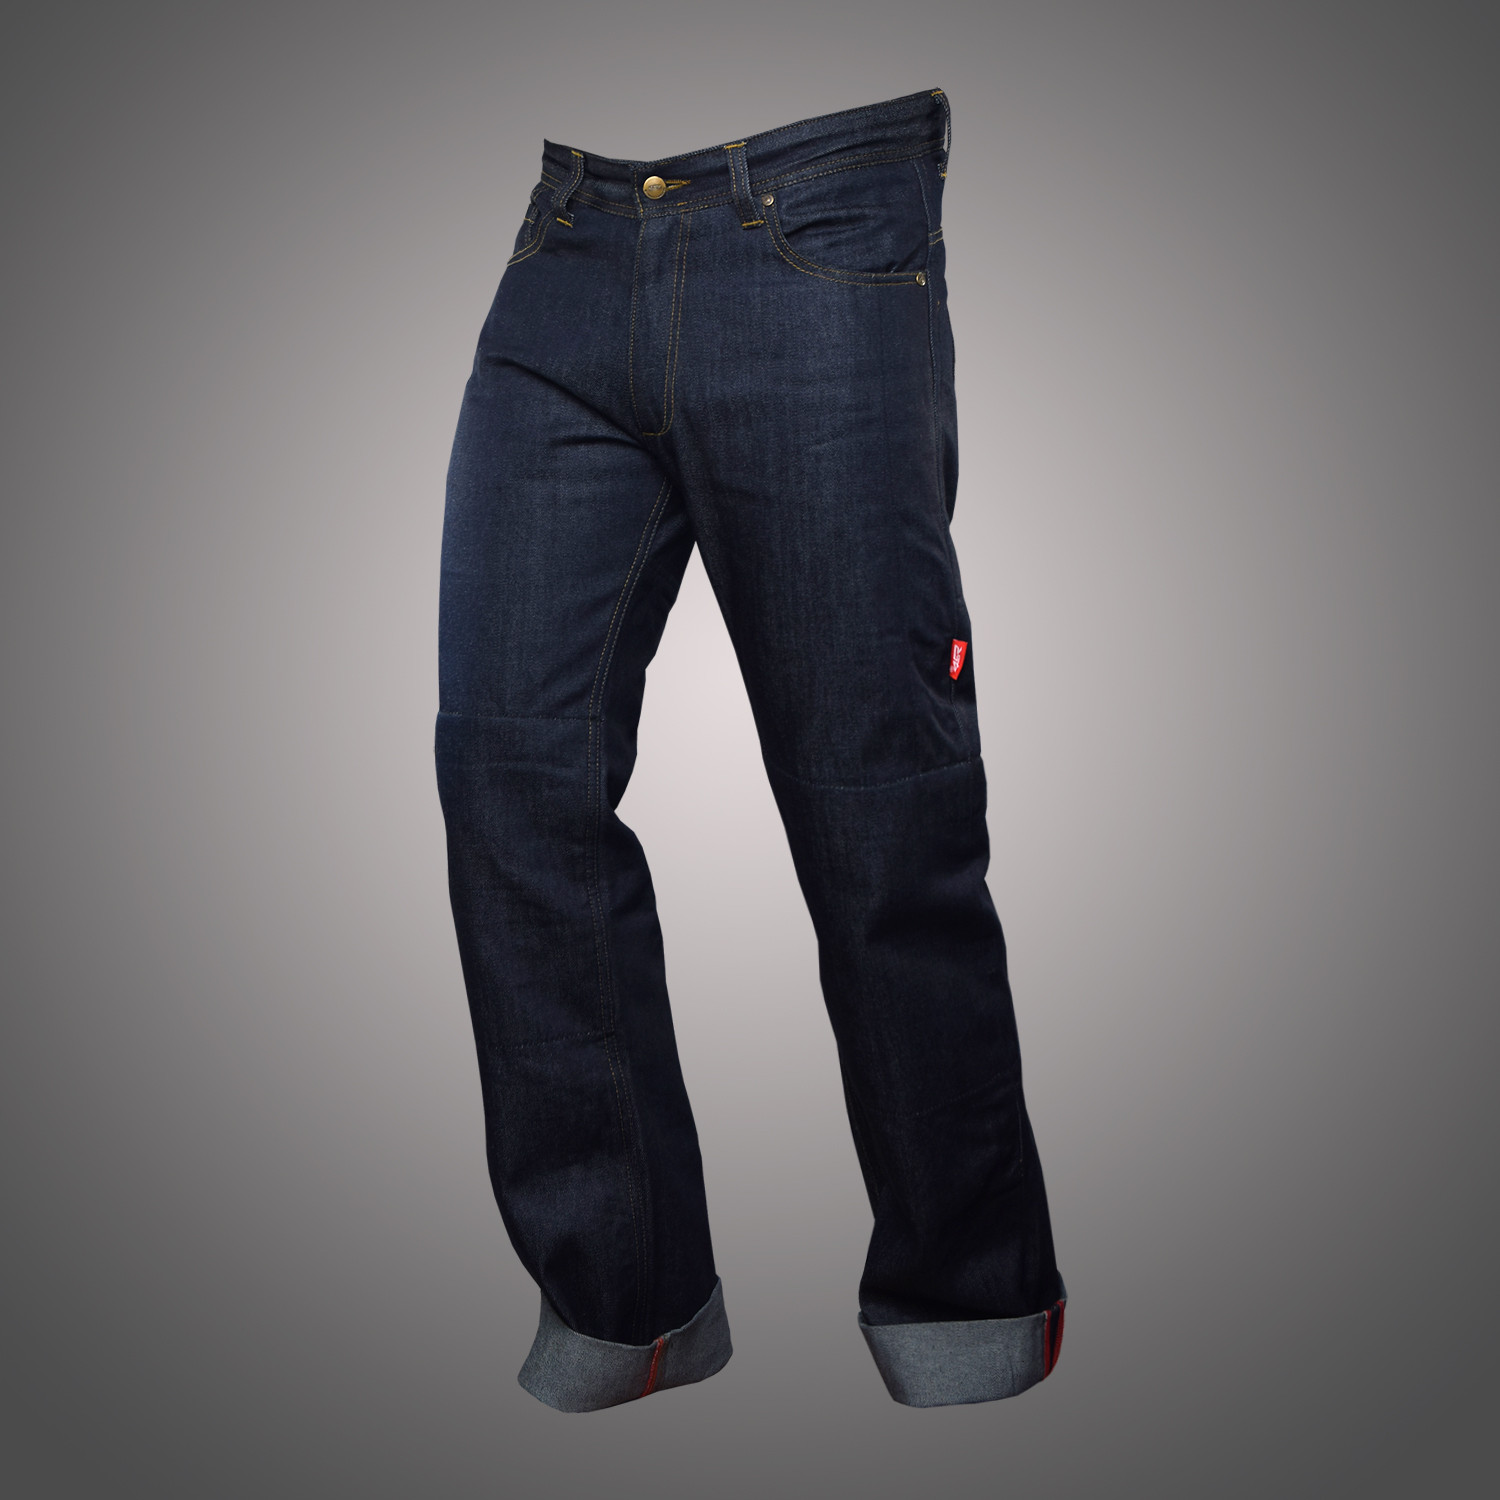 verkouden worden Forensische geneeskunde Handvol 4SR motorbroeken- Kevlar jeansbroek, kevlar jeans motorbroek, Kevlar  motorjeans